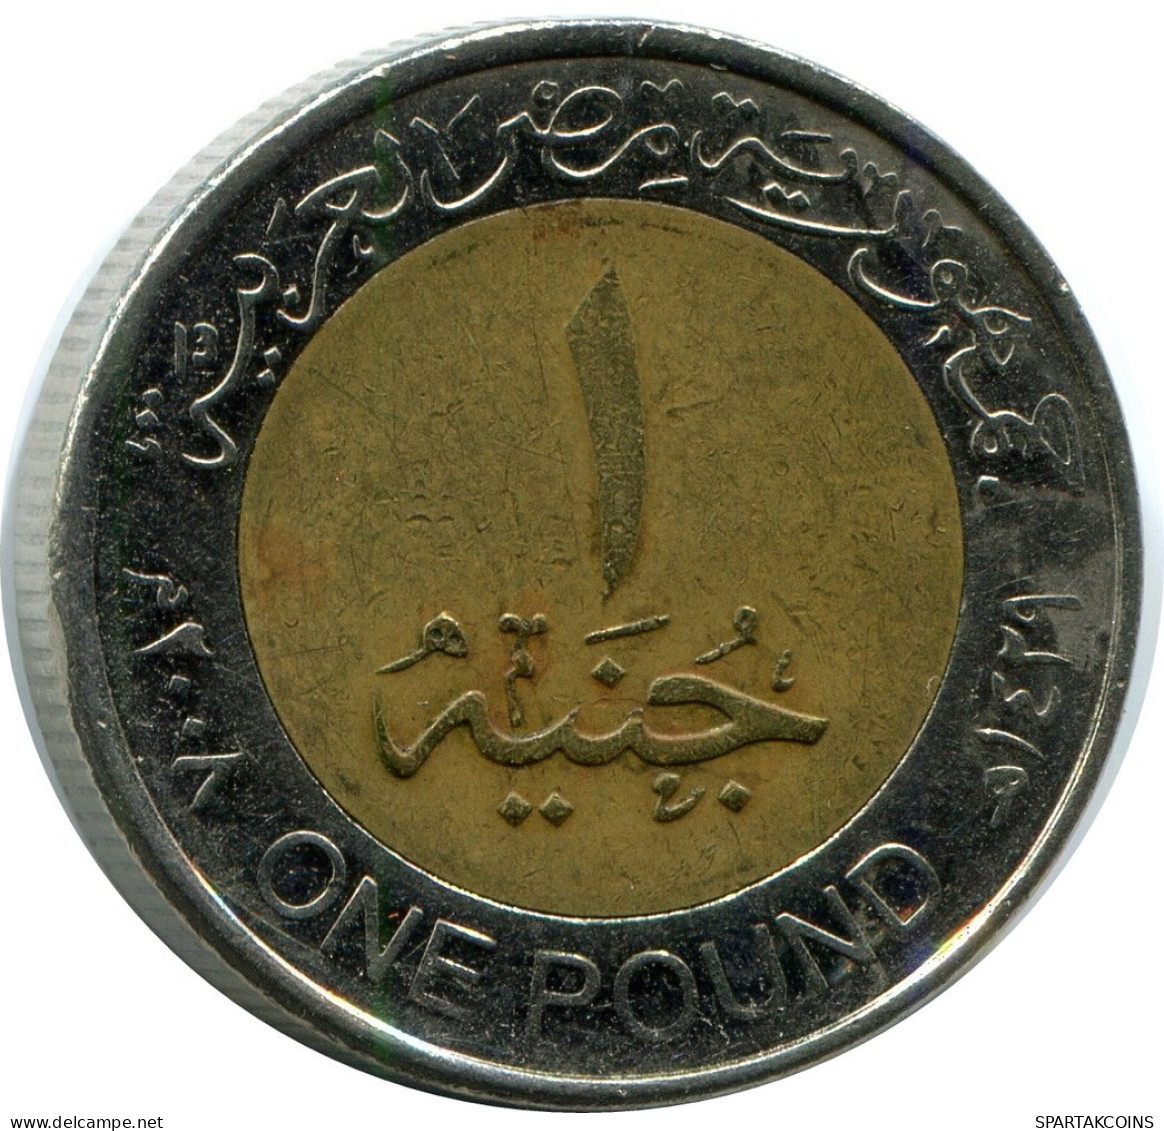 1 POUND 2008 ÄGYPTEN EGYPT BIMETALLIC Islamisch Münze #AP170.D.A - Egypte